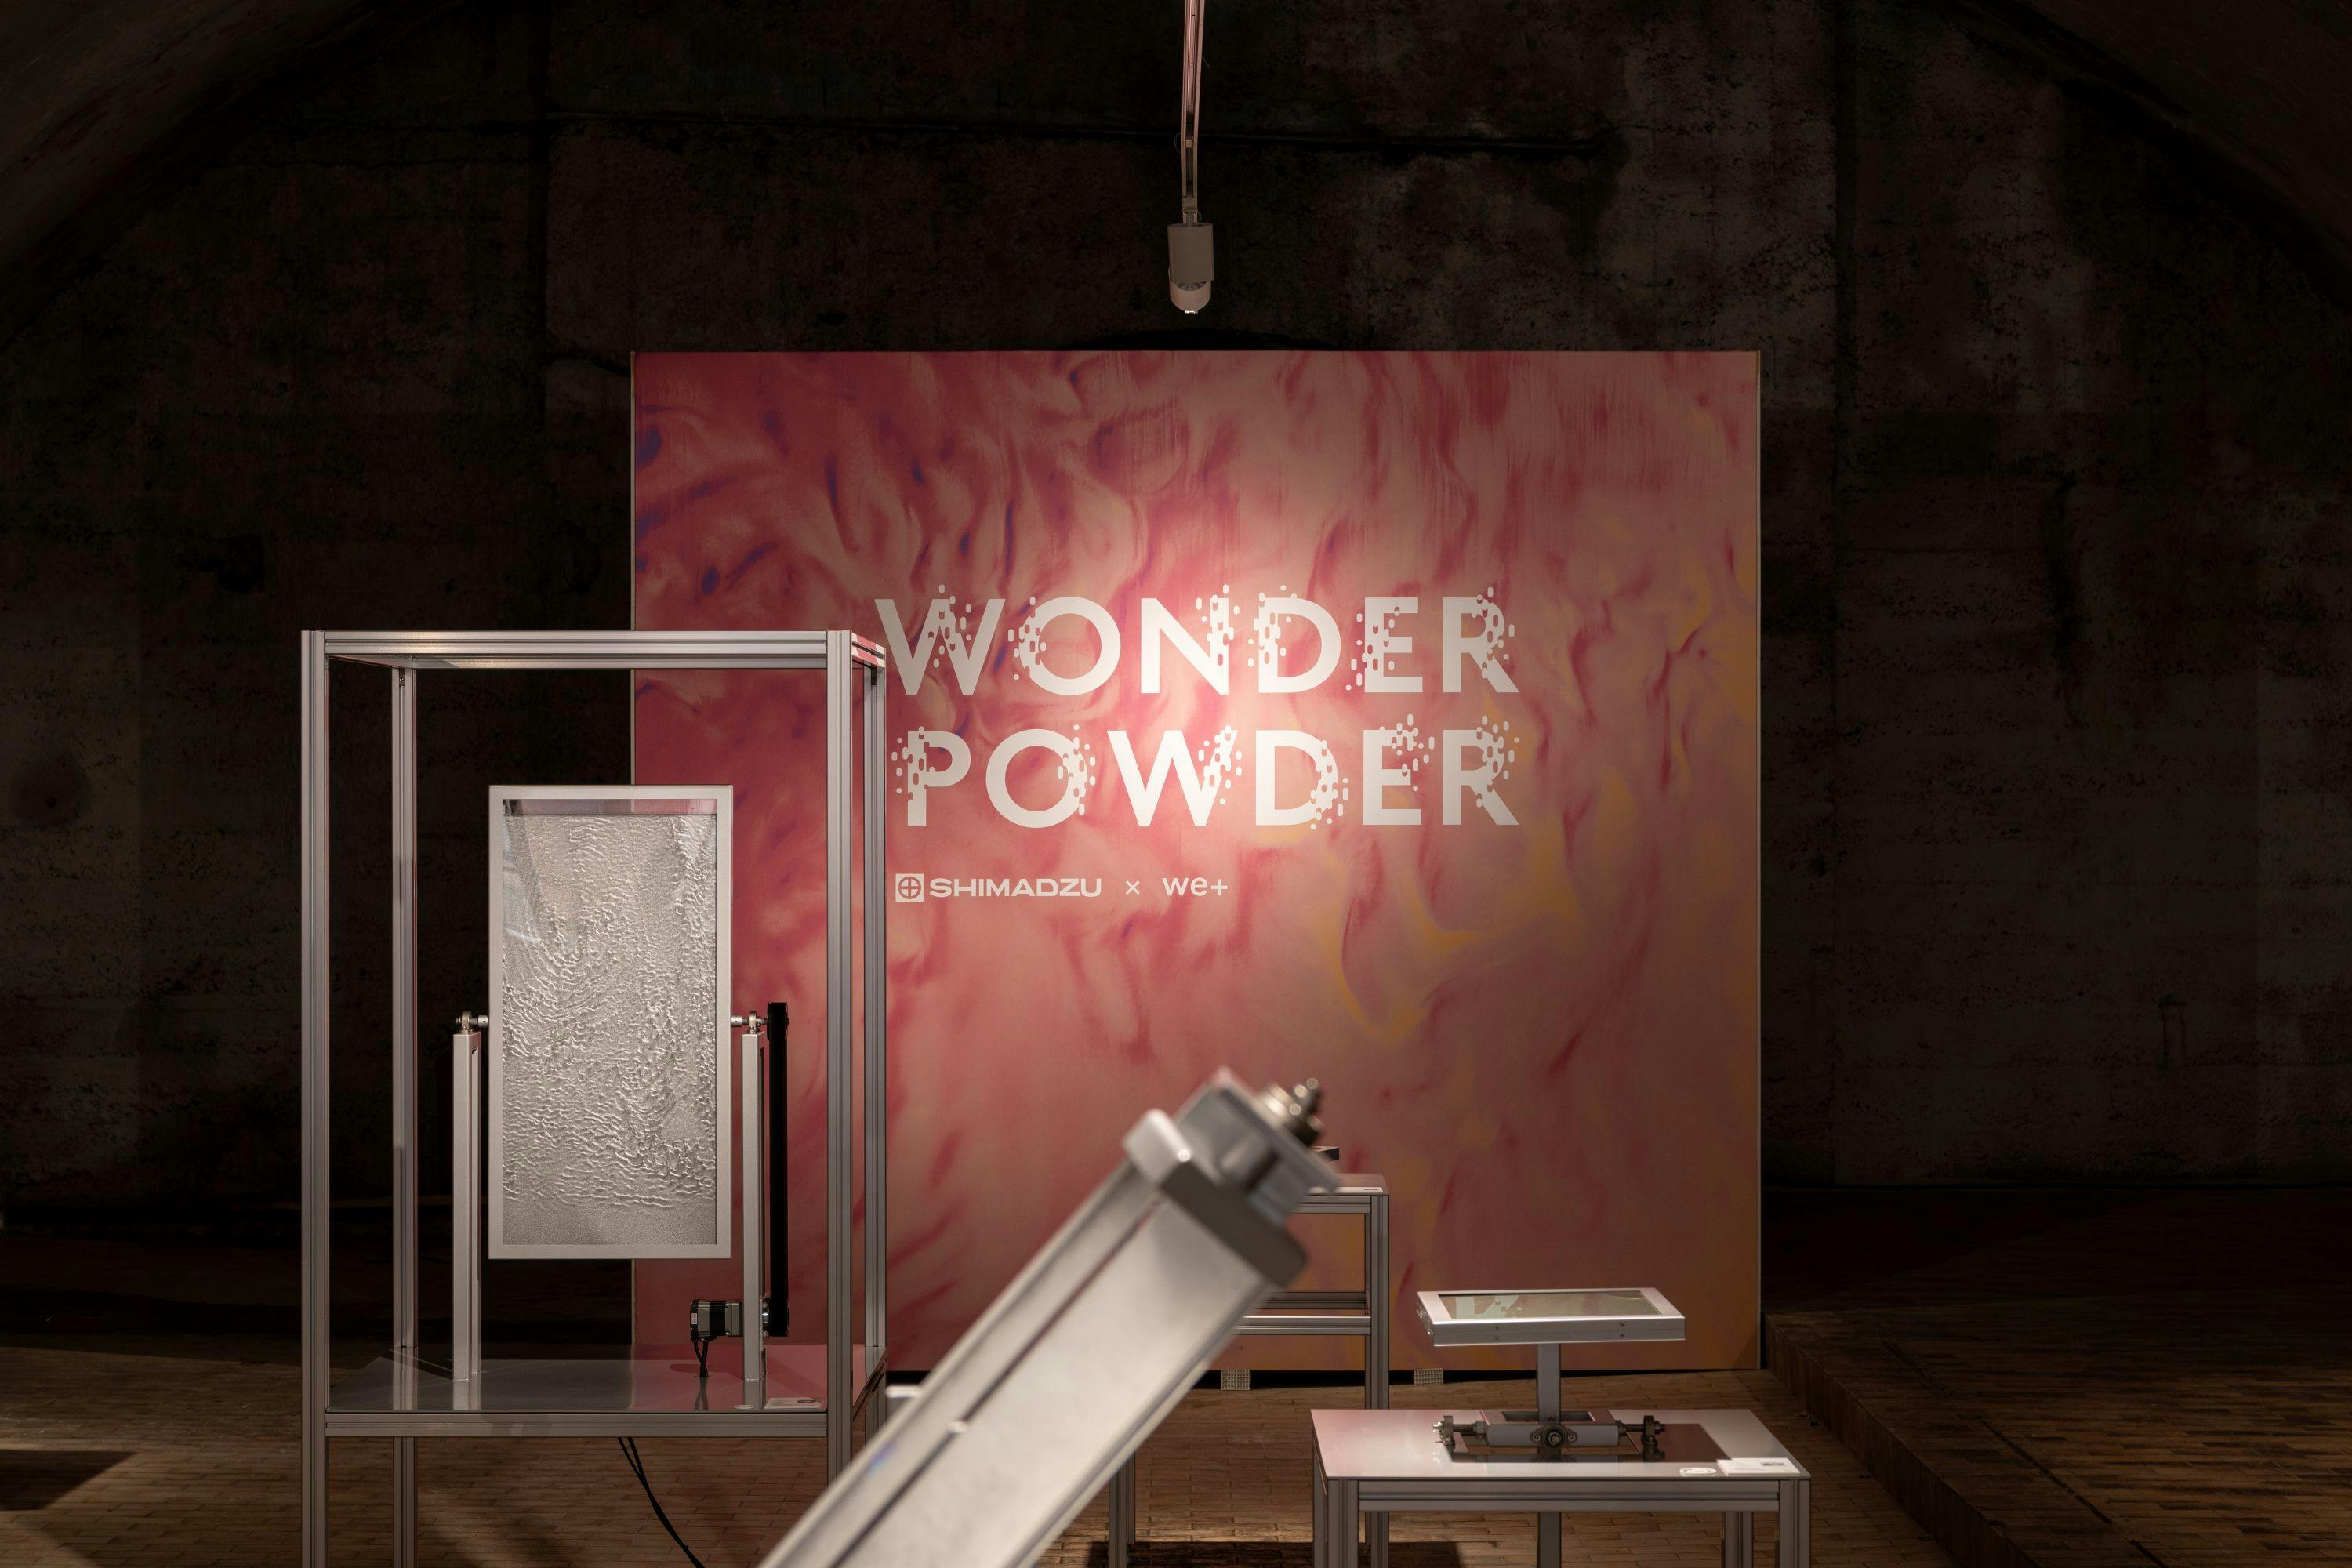 Wonder Powder | Image Credit: © Shimadzu